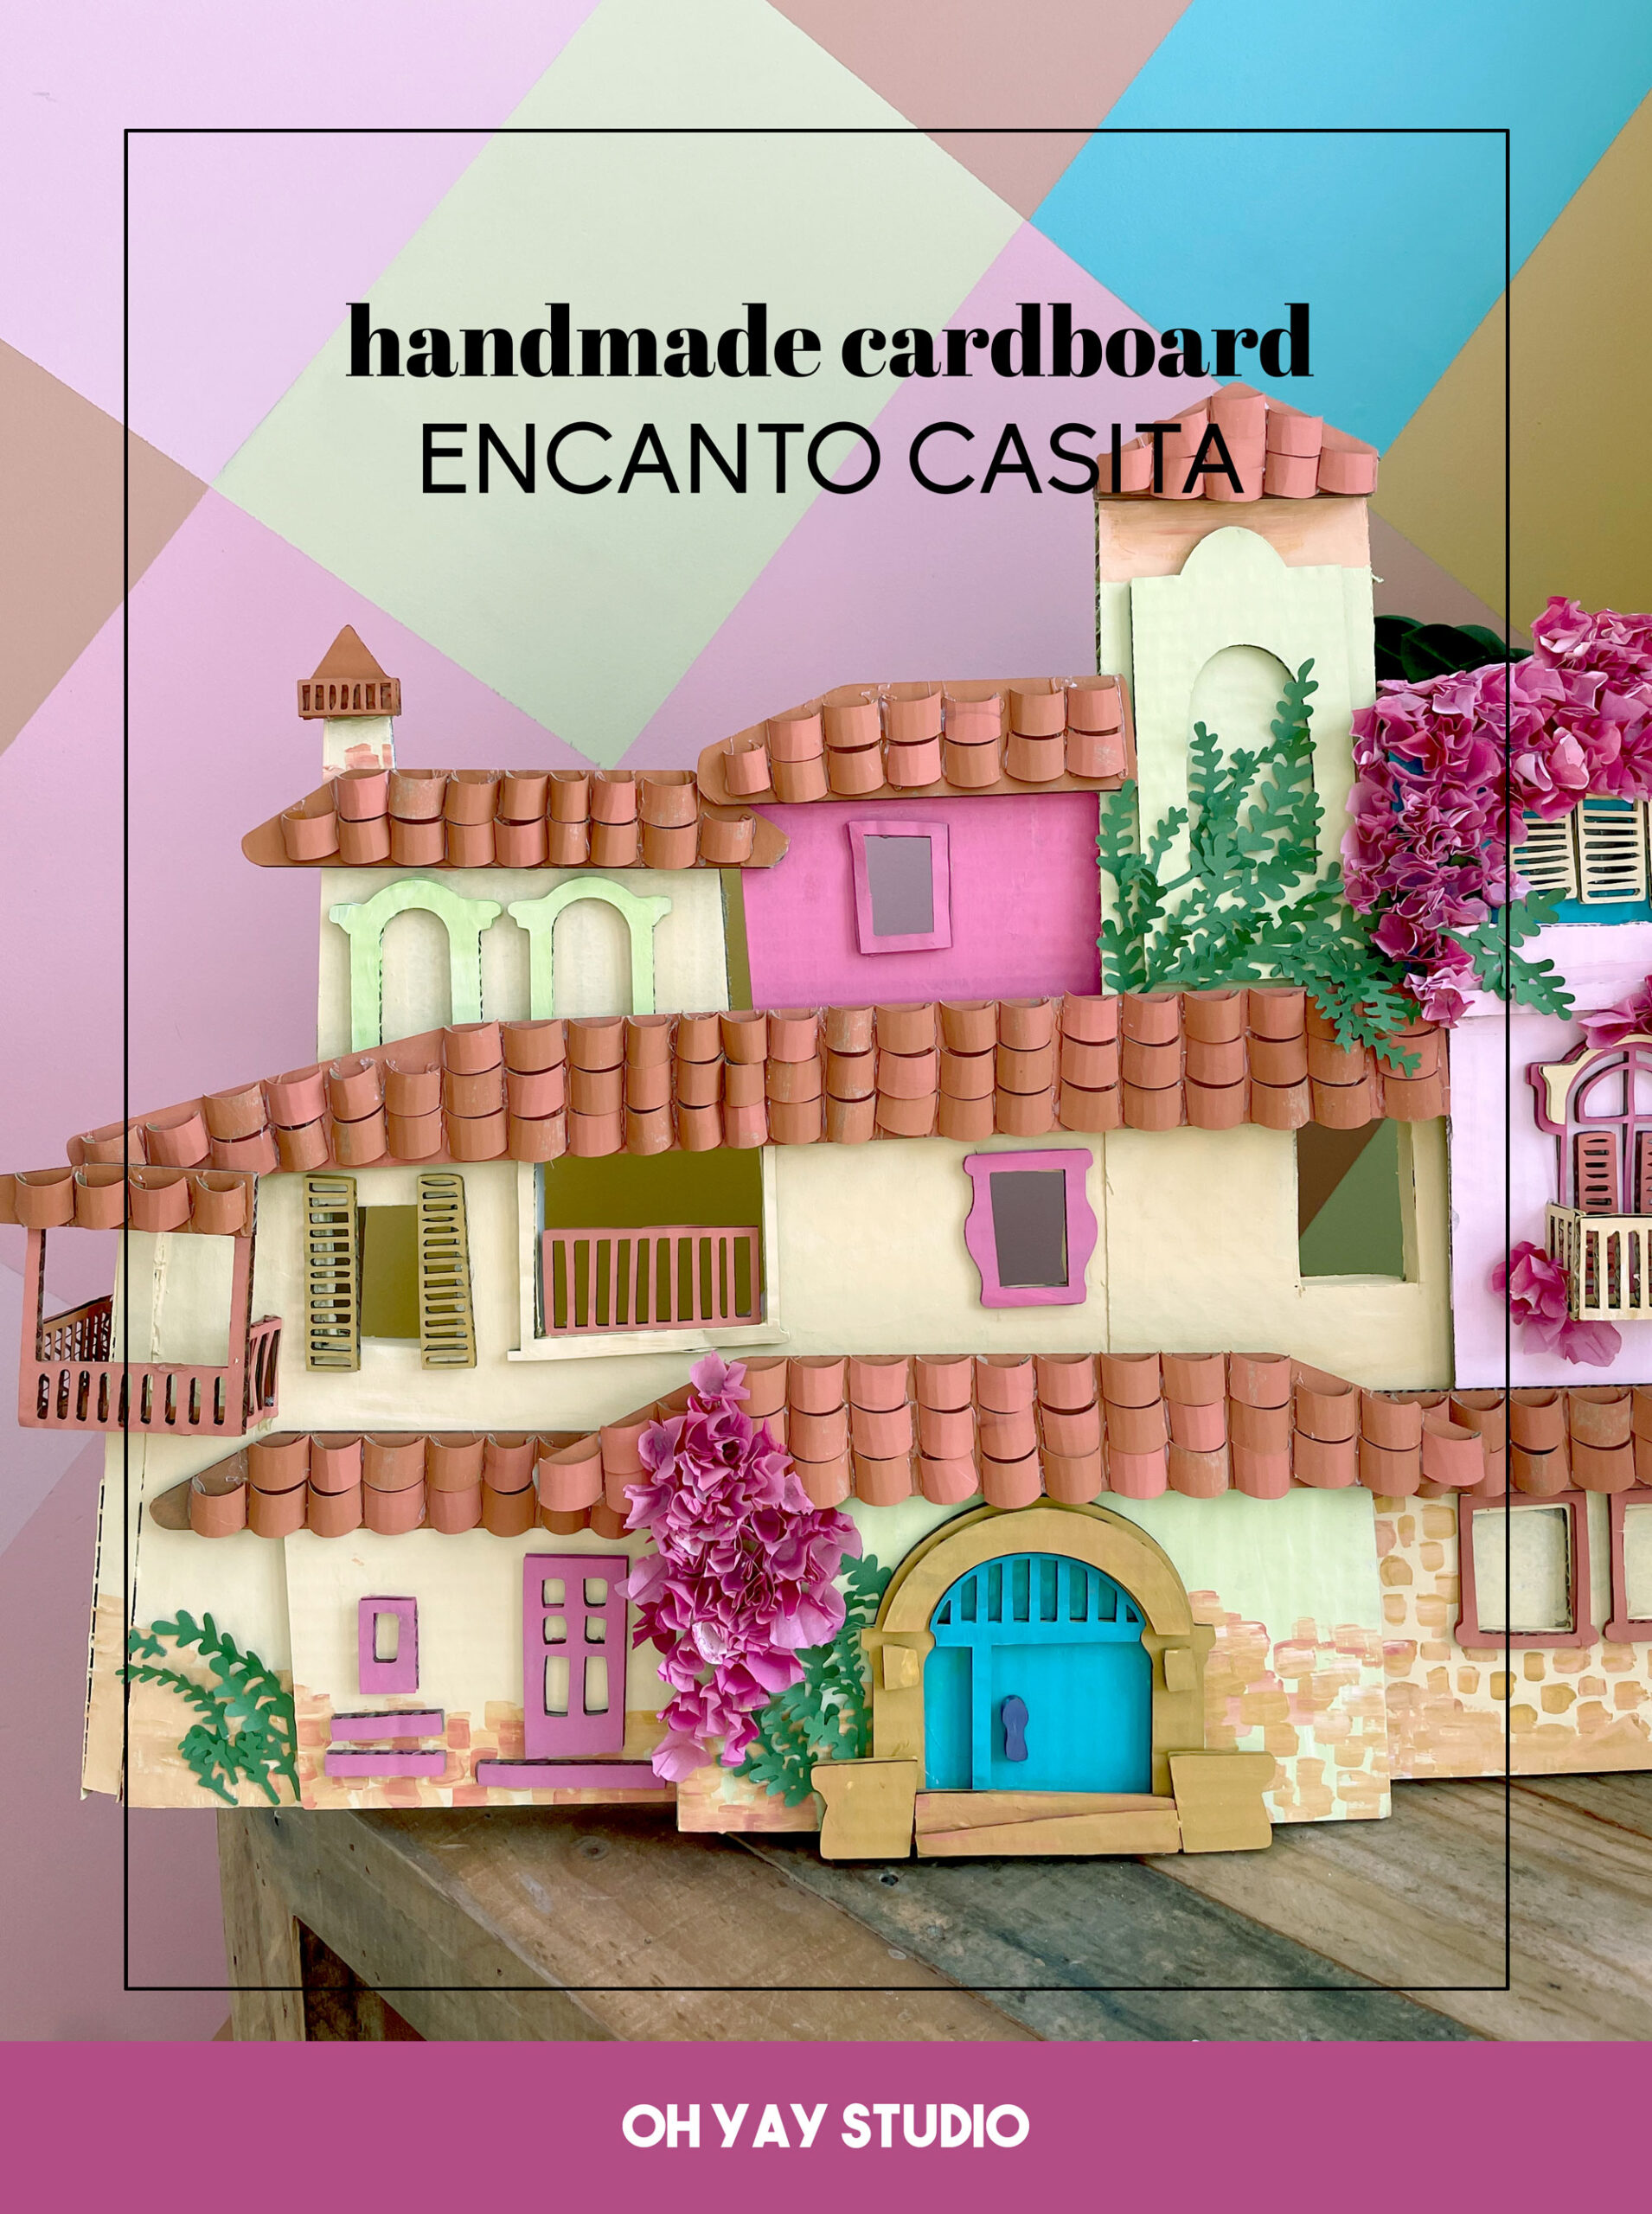 Encanto casita, cardboard Casita, cardboard structure, cardboard sculpture, how to make an Encanto Casita, Disney Encanto DIY